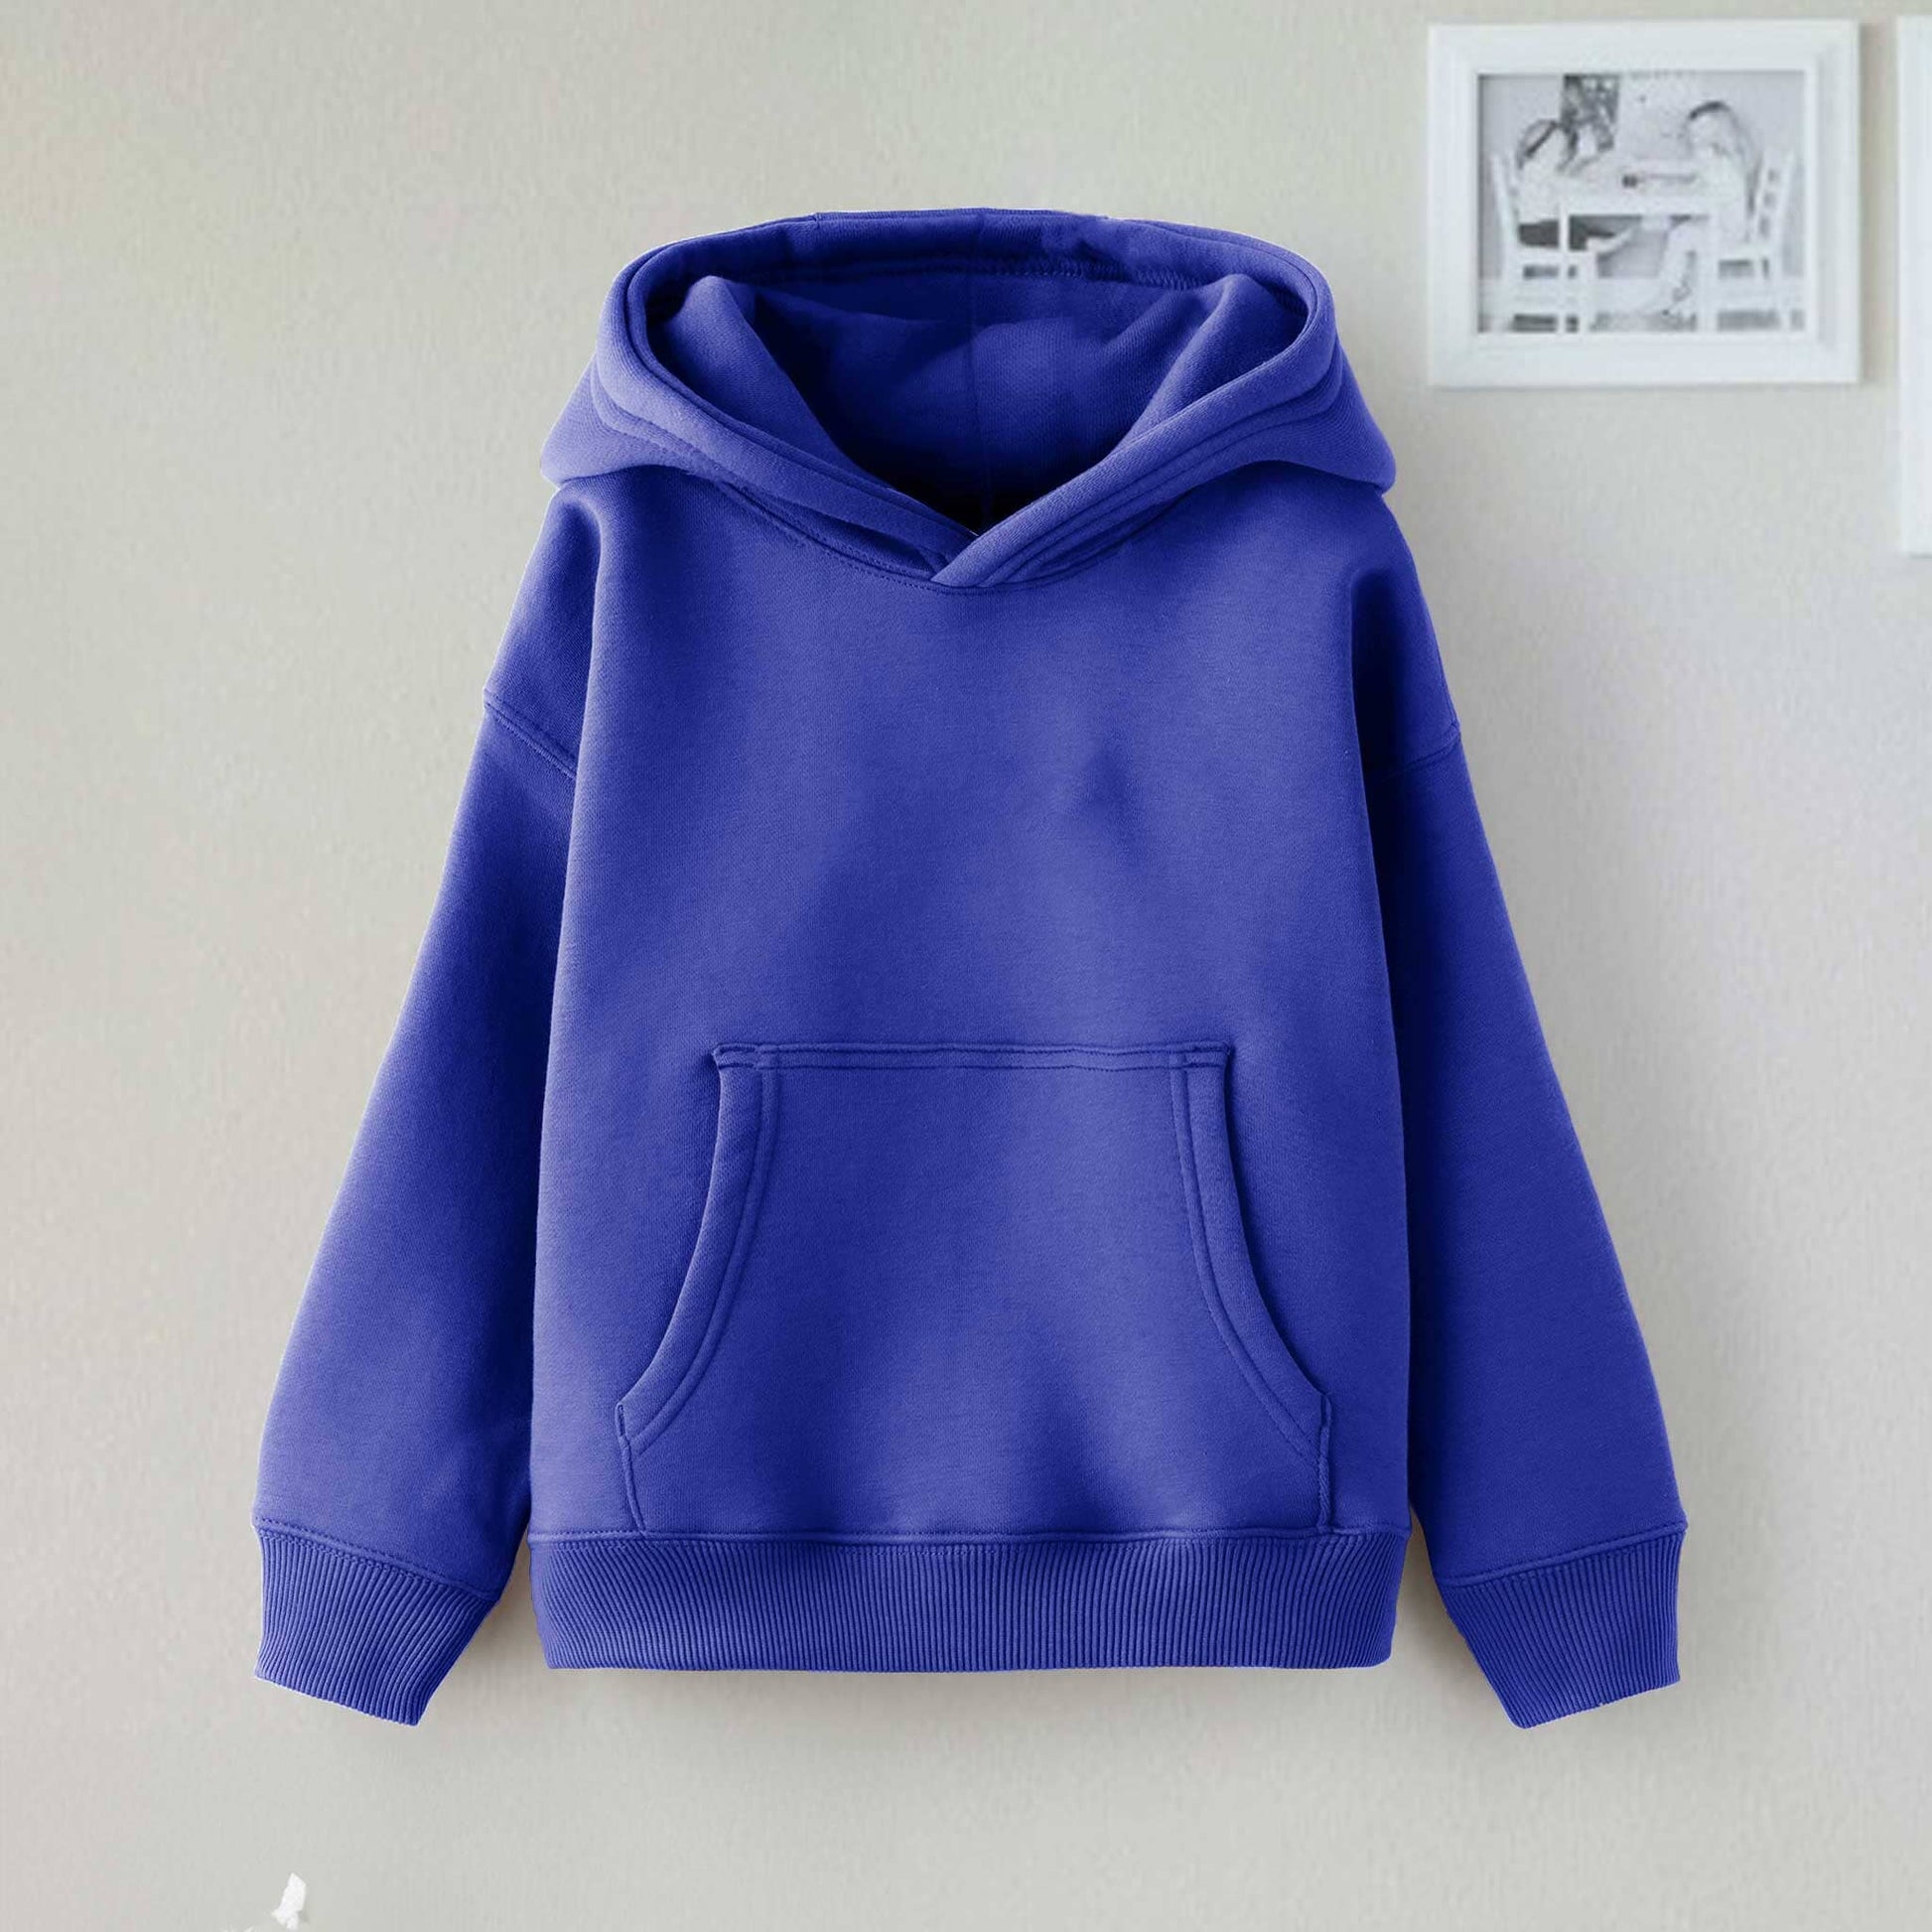 Dream Kid's Solid Design Long Sleeve Pullover Fleece Hoodie Boy's Pullover Hoodie Minhas Garments Royal 2-3 Years 